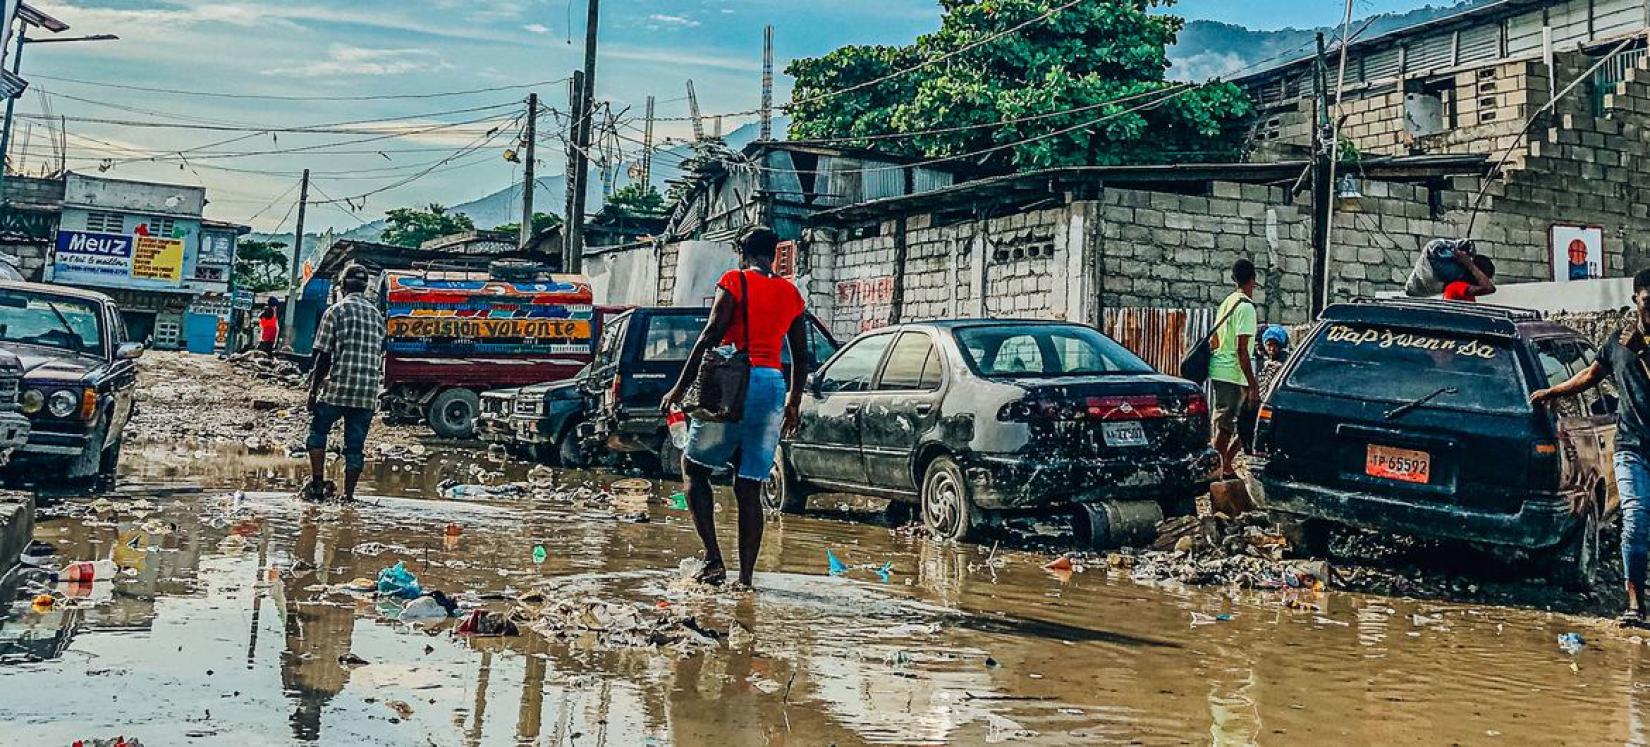 Les zones urbaines d'Haïti ont été inondées à la suite de pluies torrentielles.